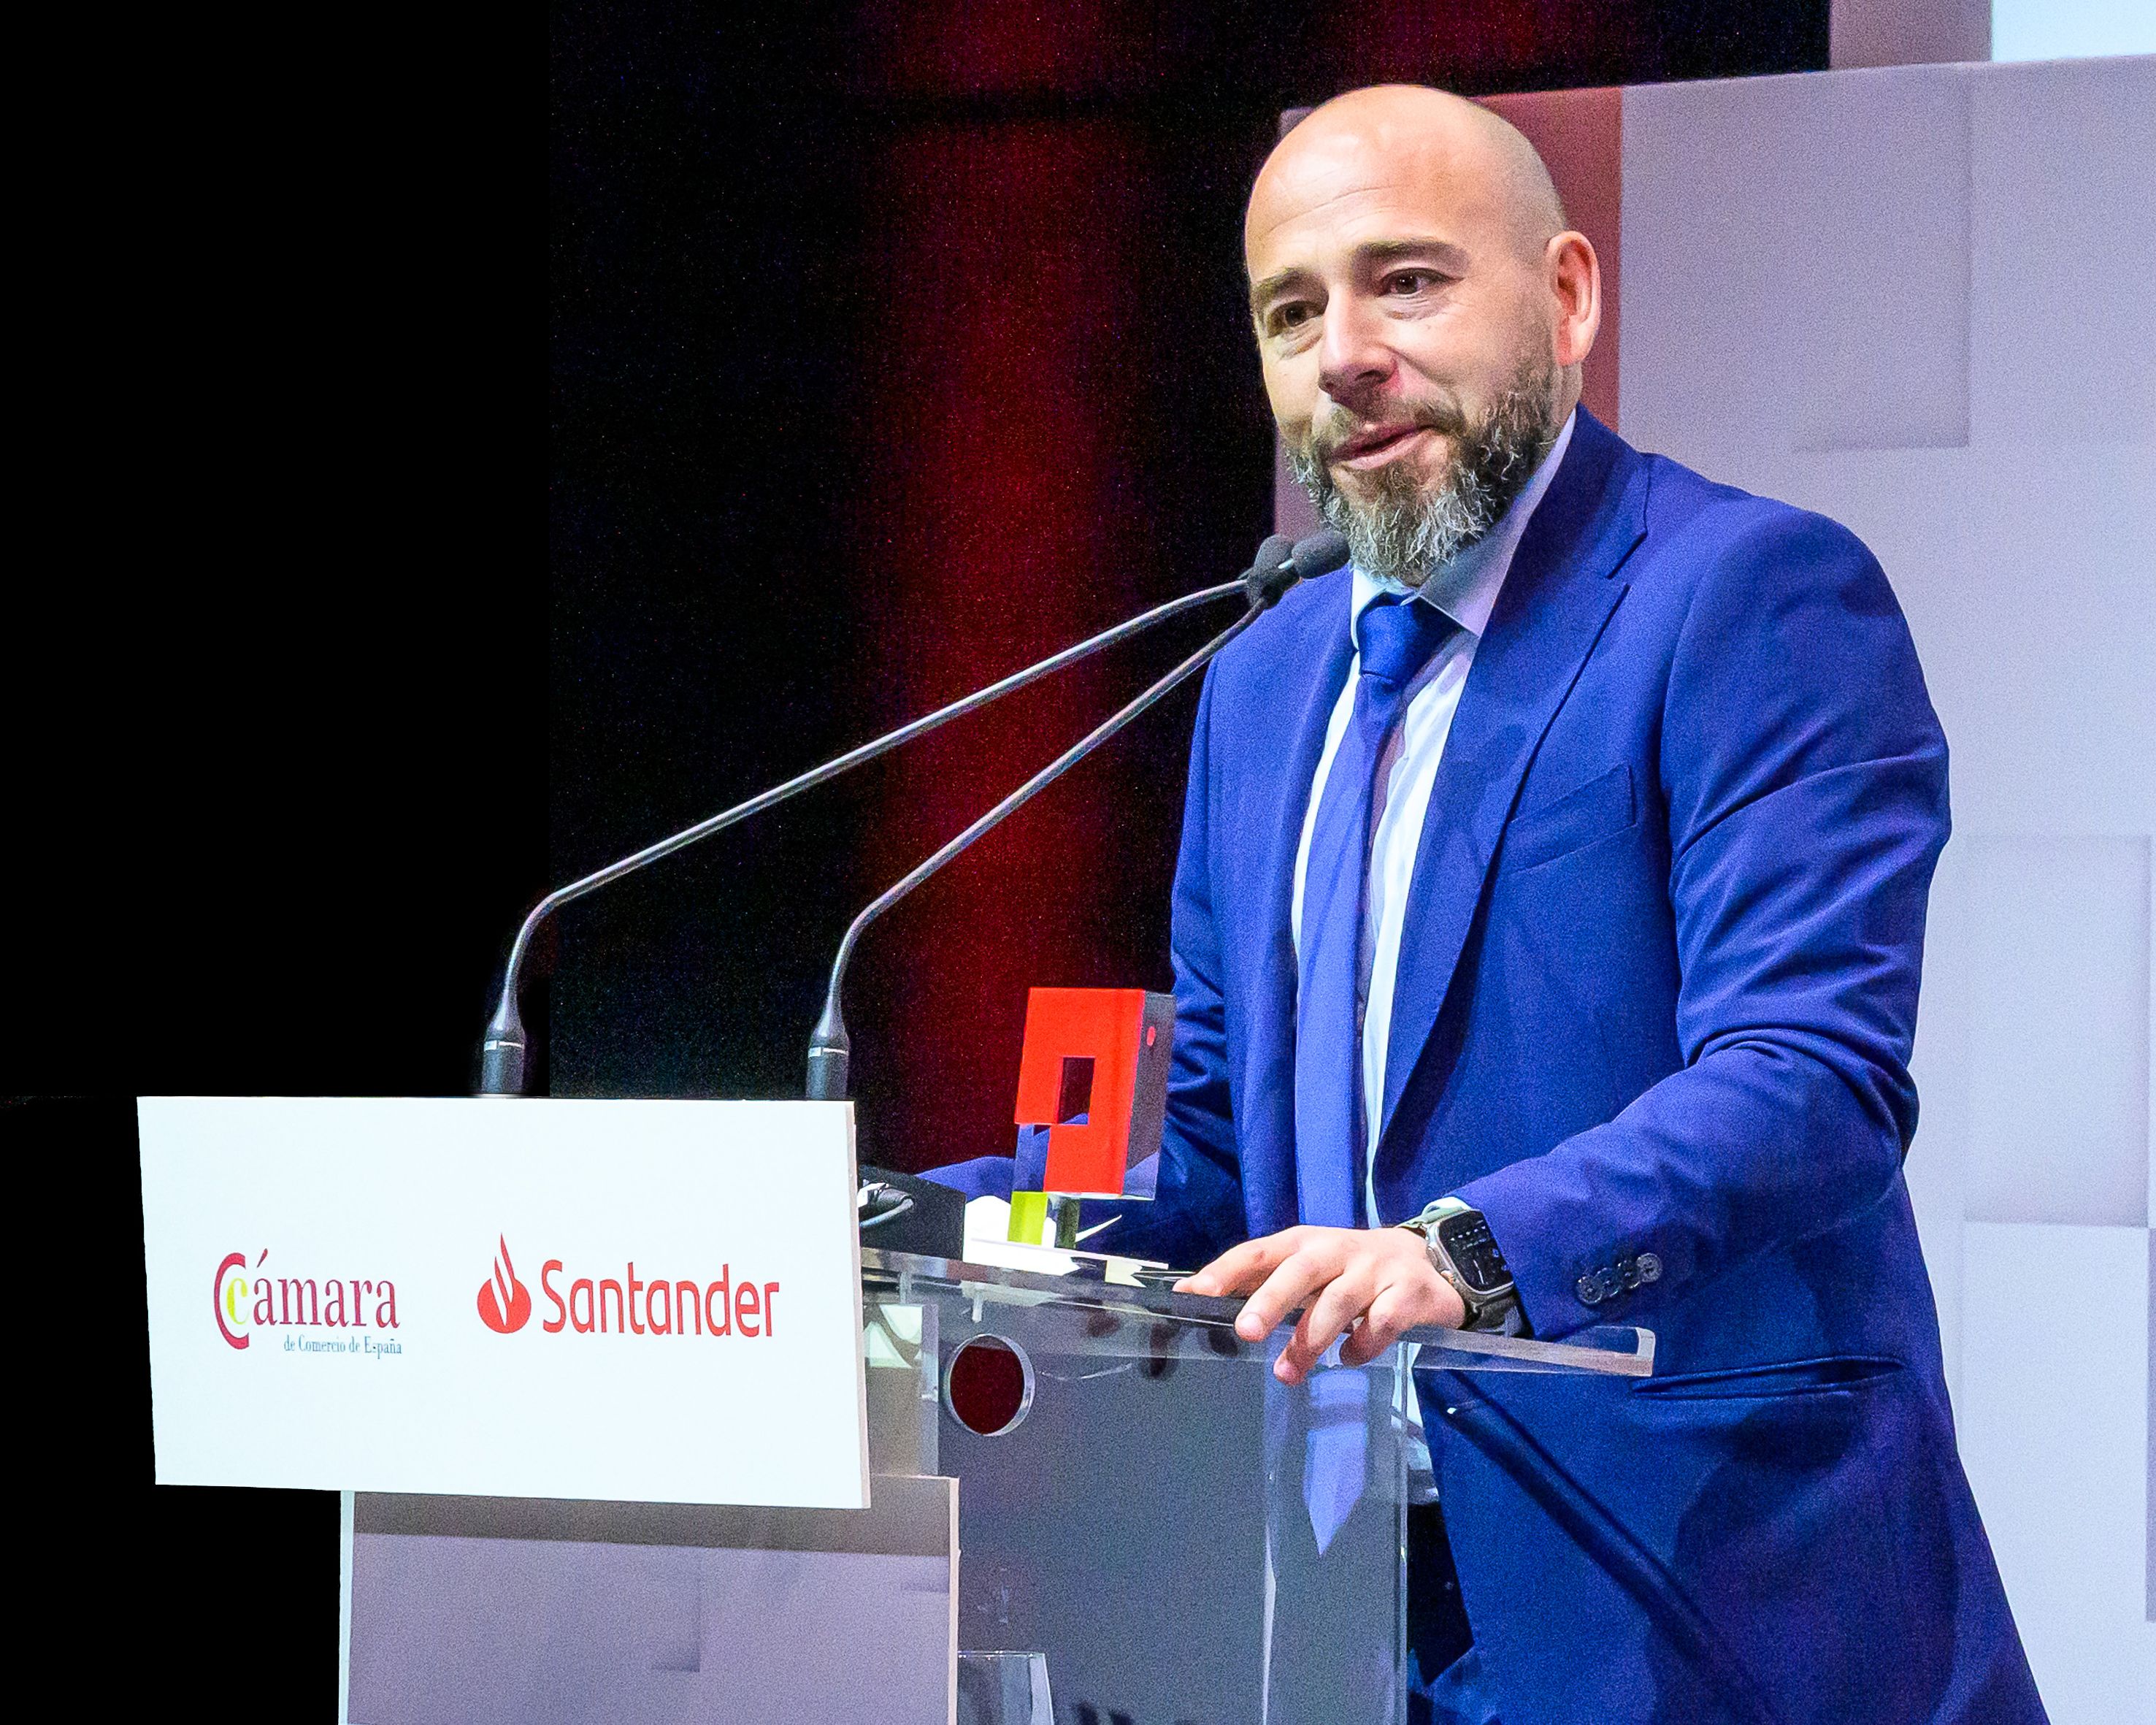 Ángel Llavero López de Villalta, CEO de Meltio, en el discurso de aceptación del premio Pyme del Año, otorgado por el Banco Santander y la Cámara de Comercio de España